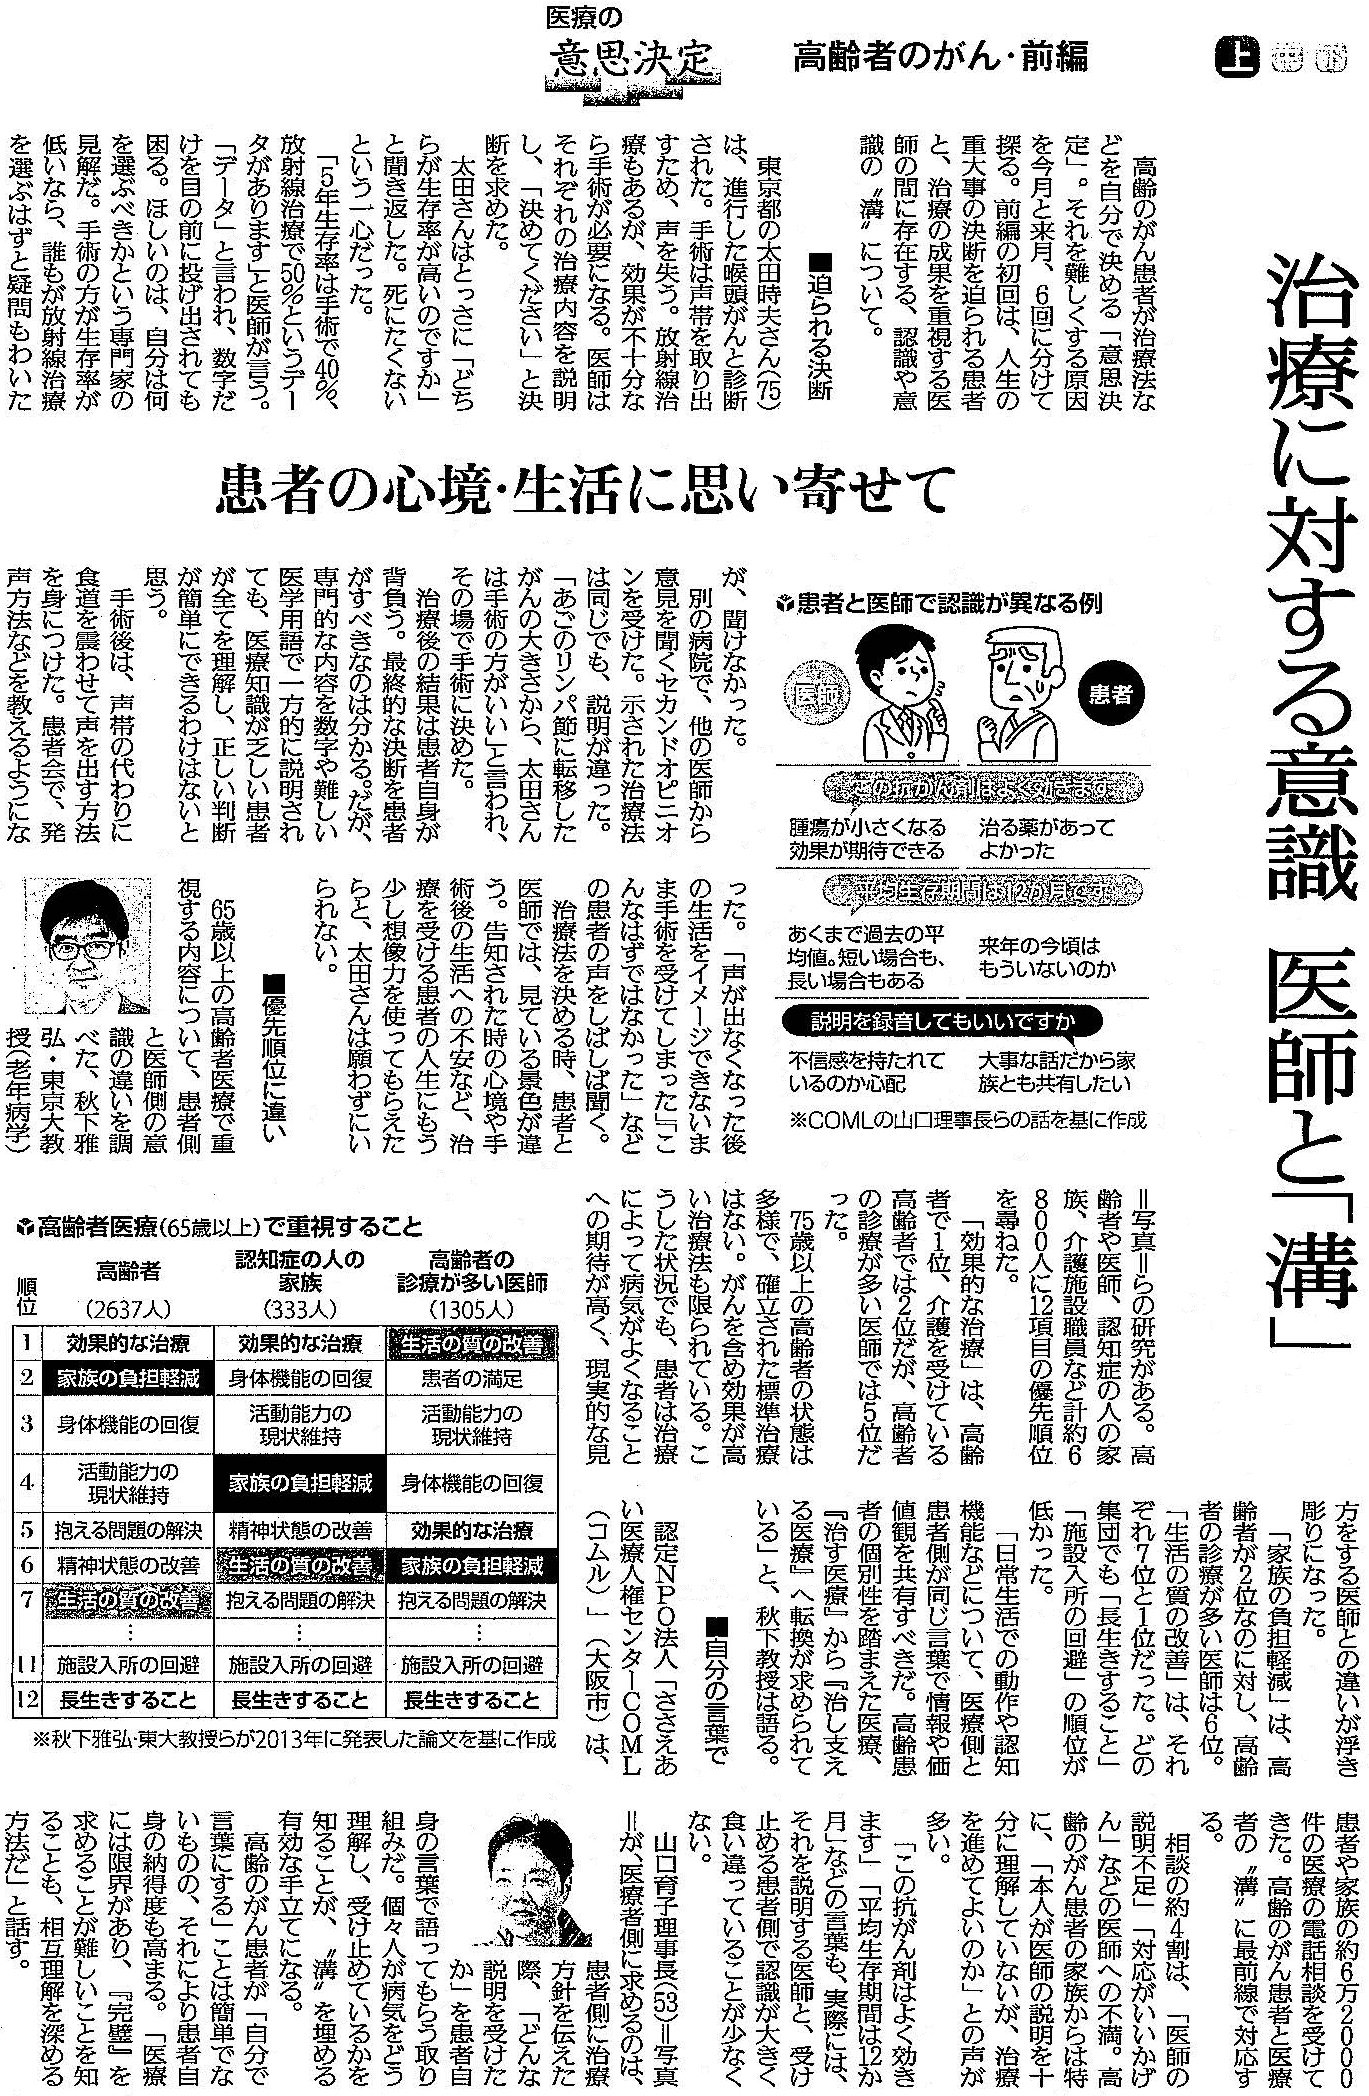 読売新聞 2019年10月28日掲載記事